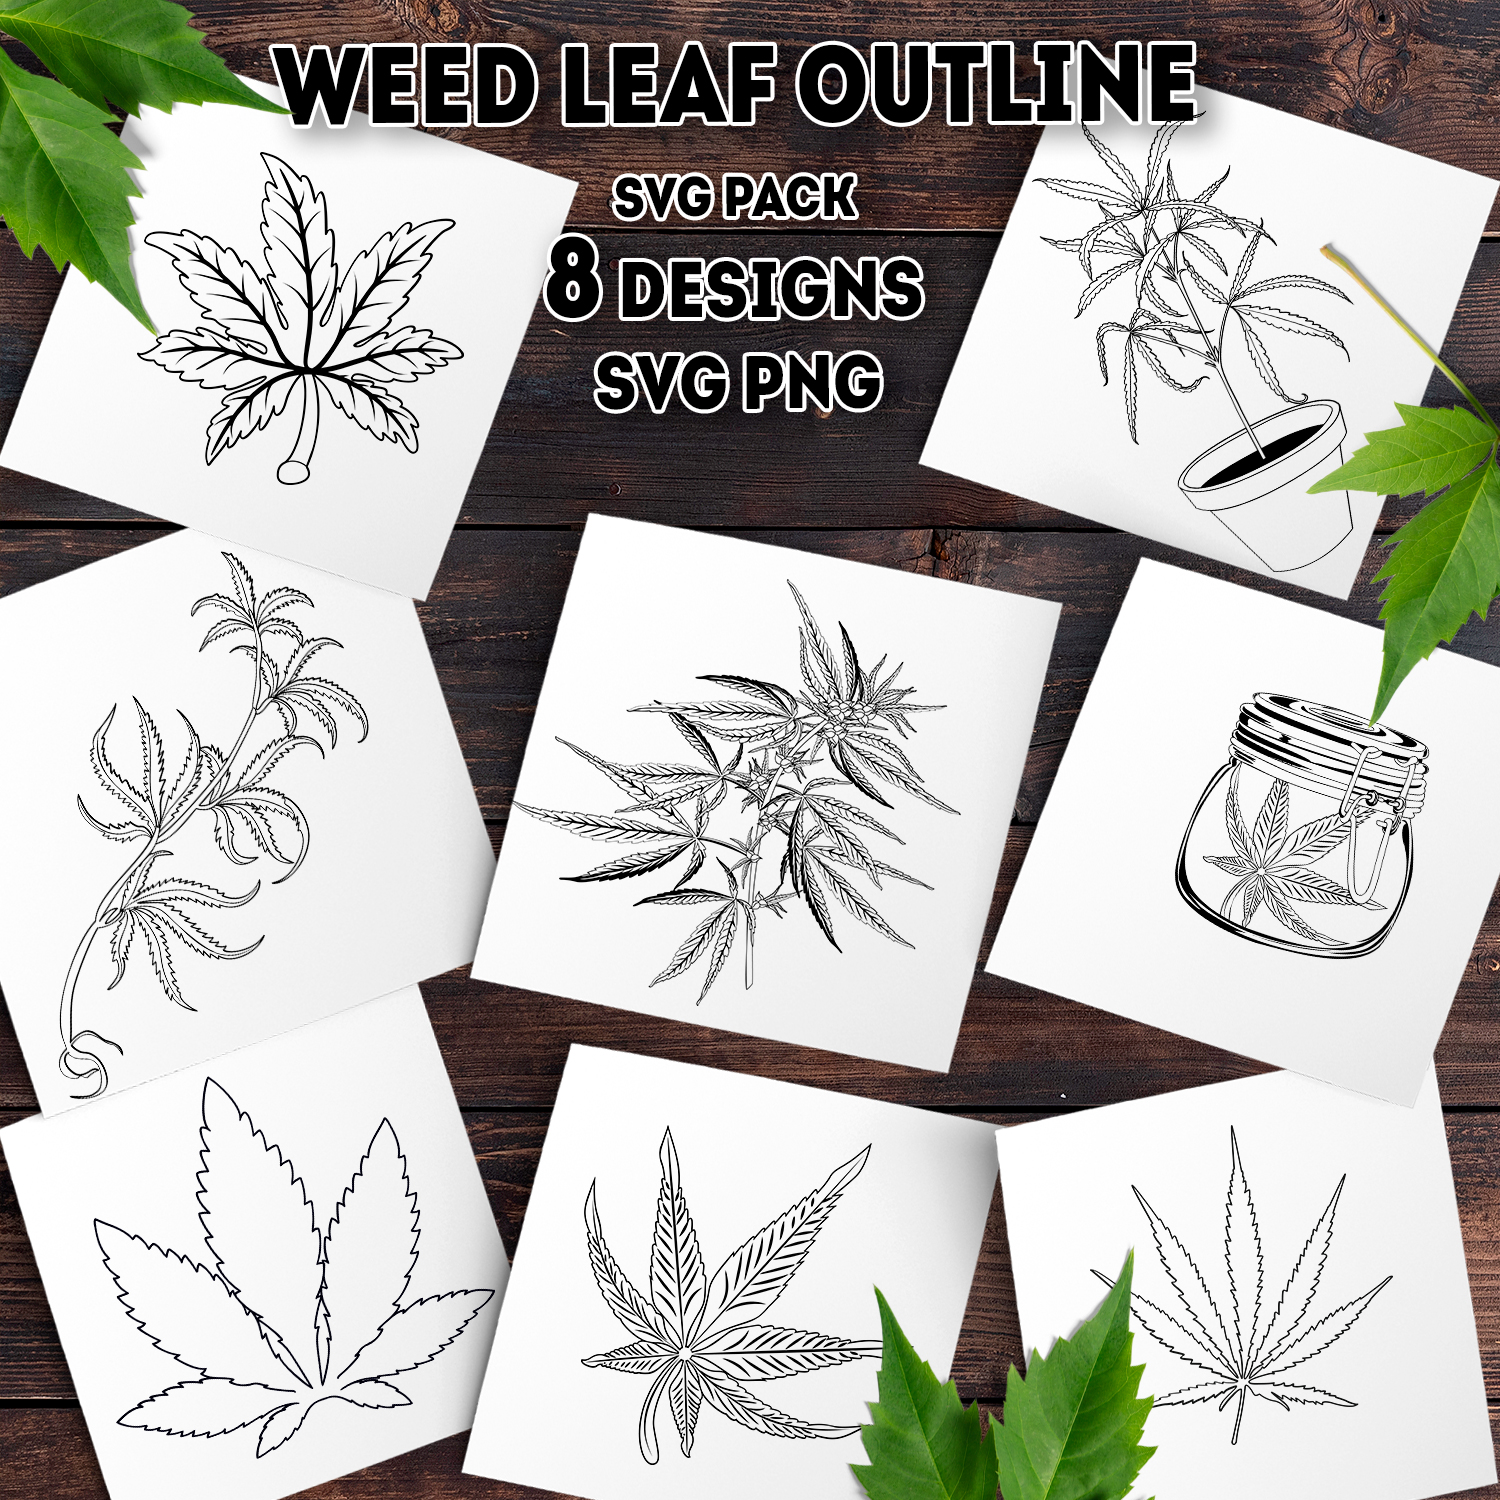 Images with weed leaf outline svg.